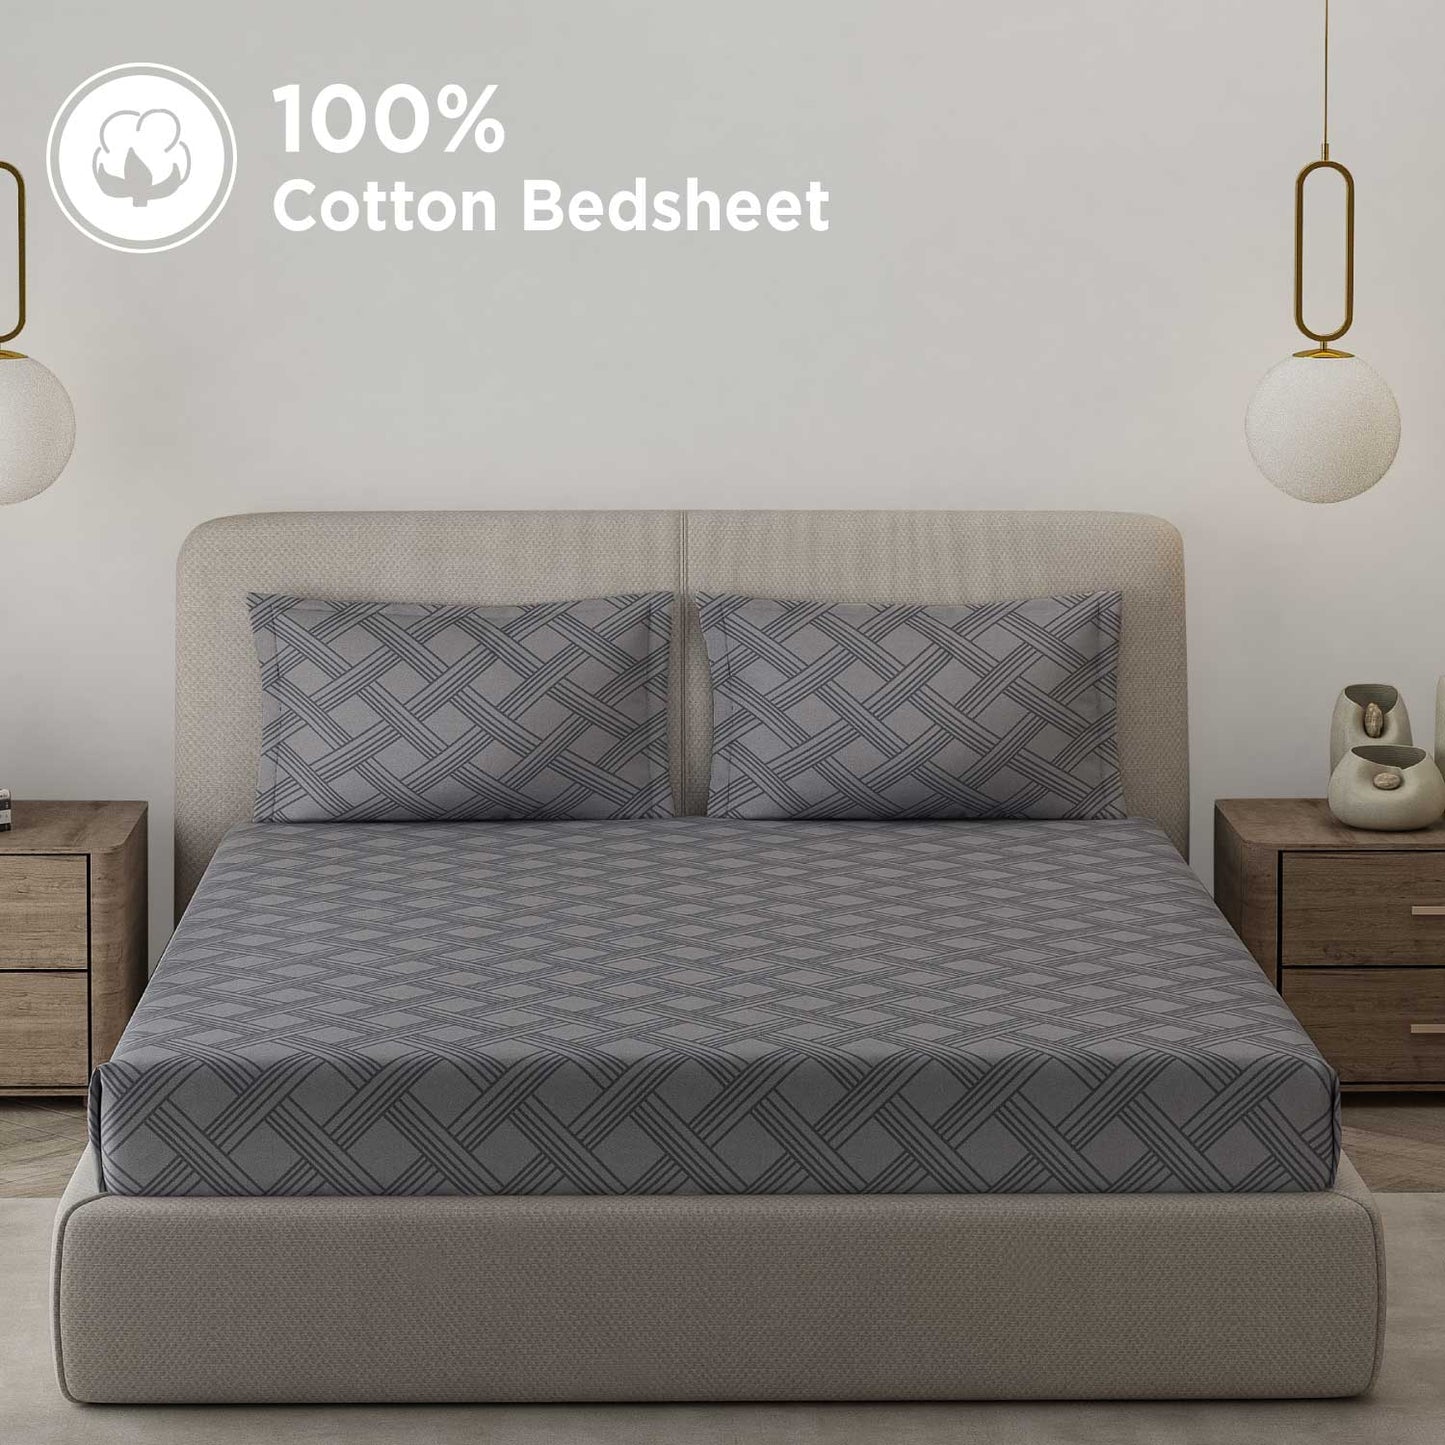 Premium Cotton Bedsheets